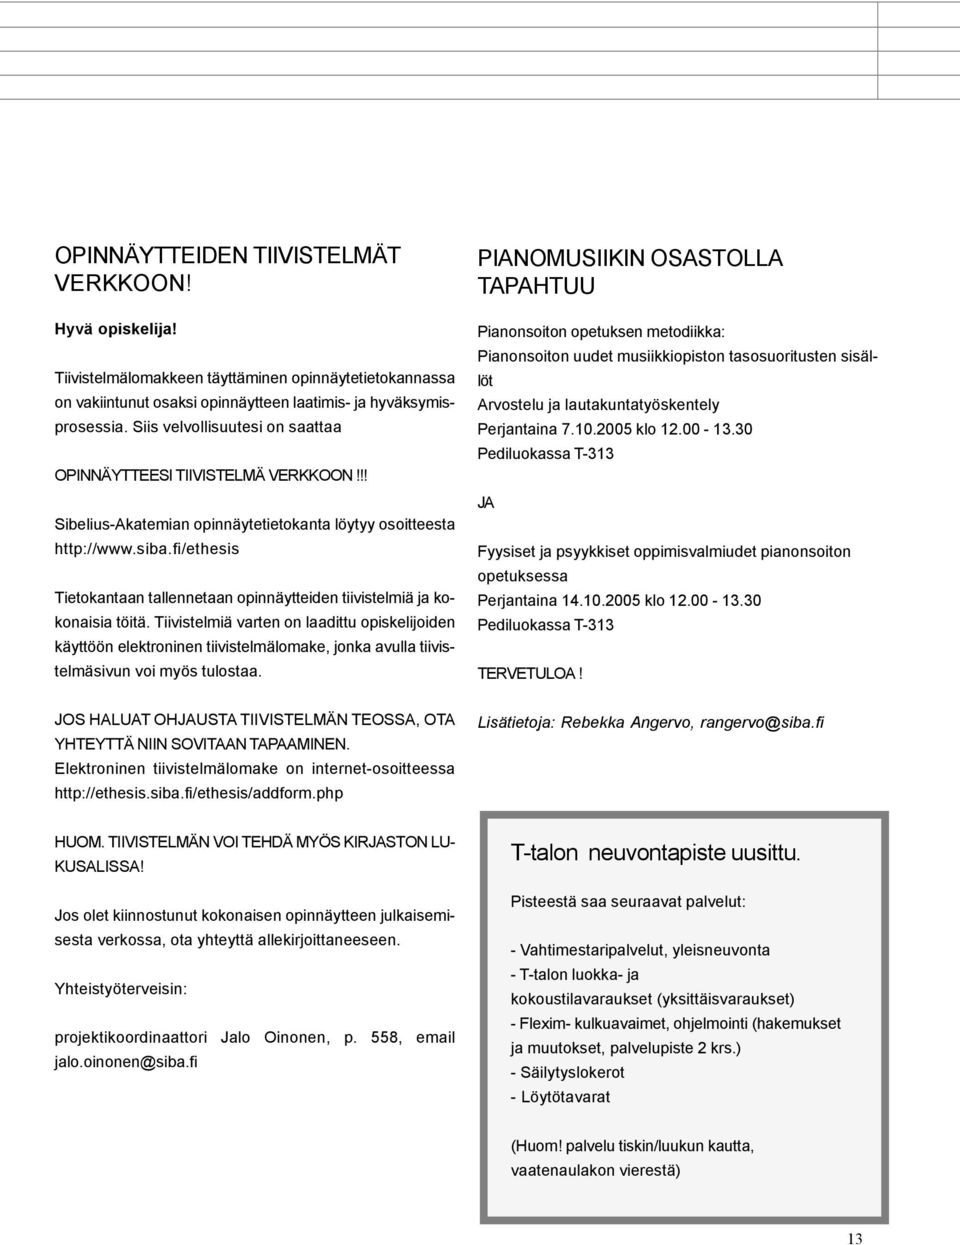 fi/ethesis Tietokantaan tallennetaan opinnäytteiden tiivistelmiä ja kokonaisia töitä.